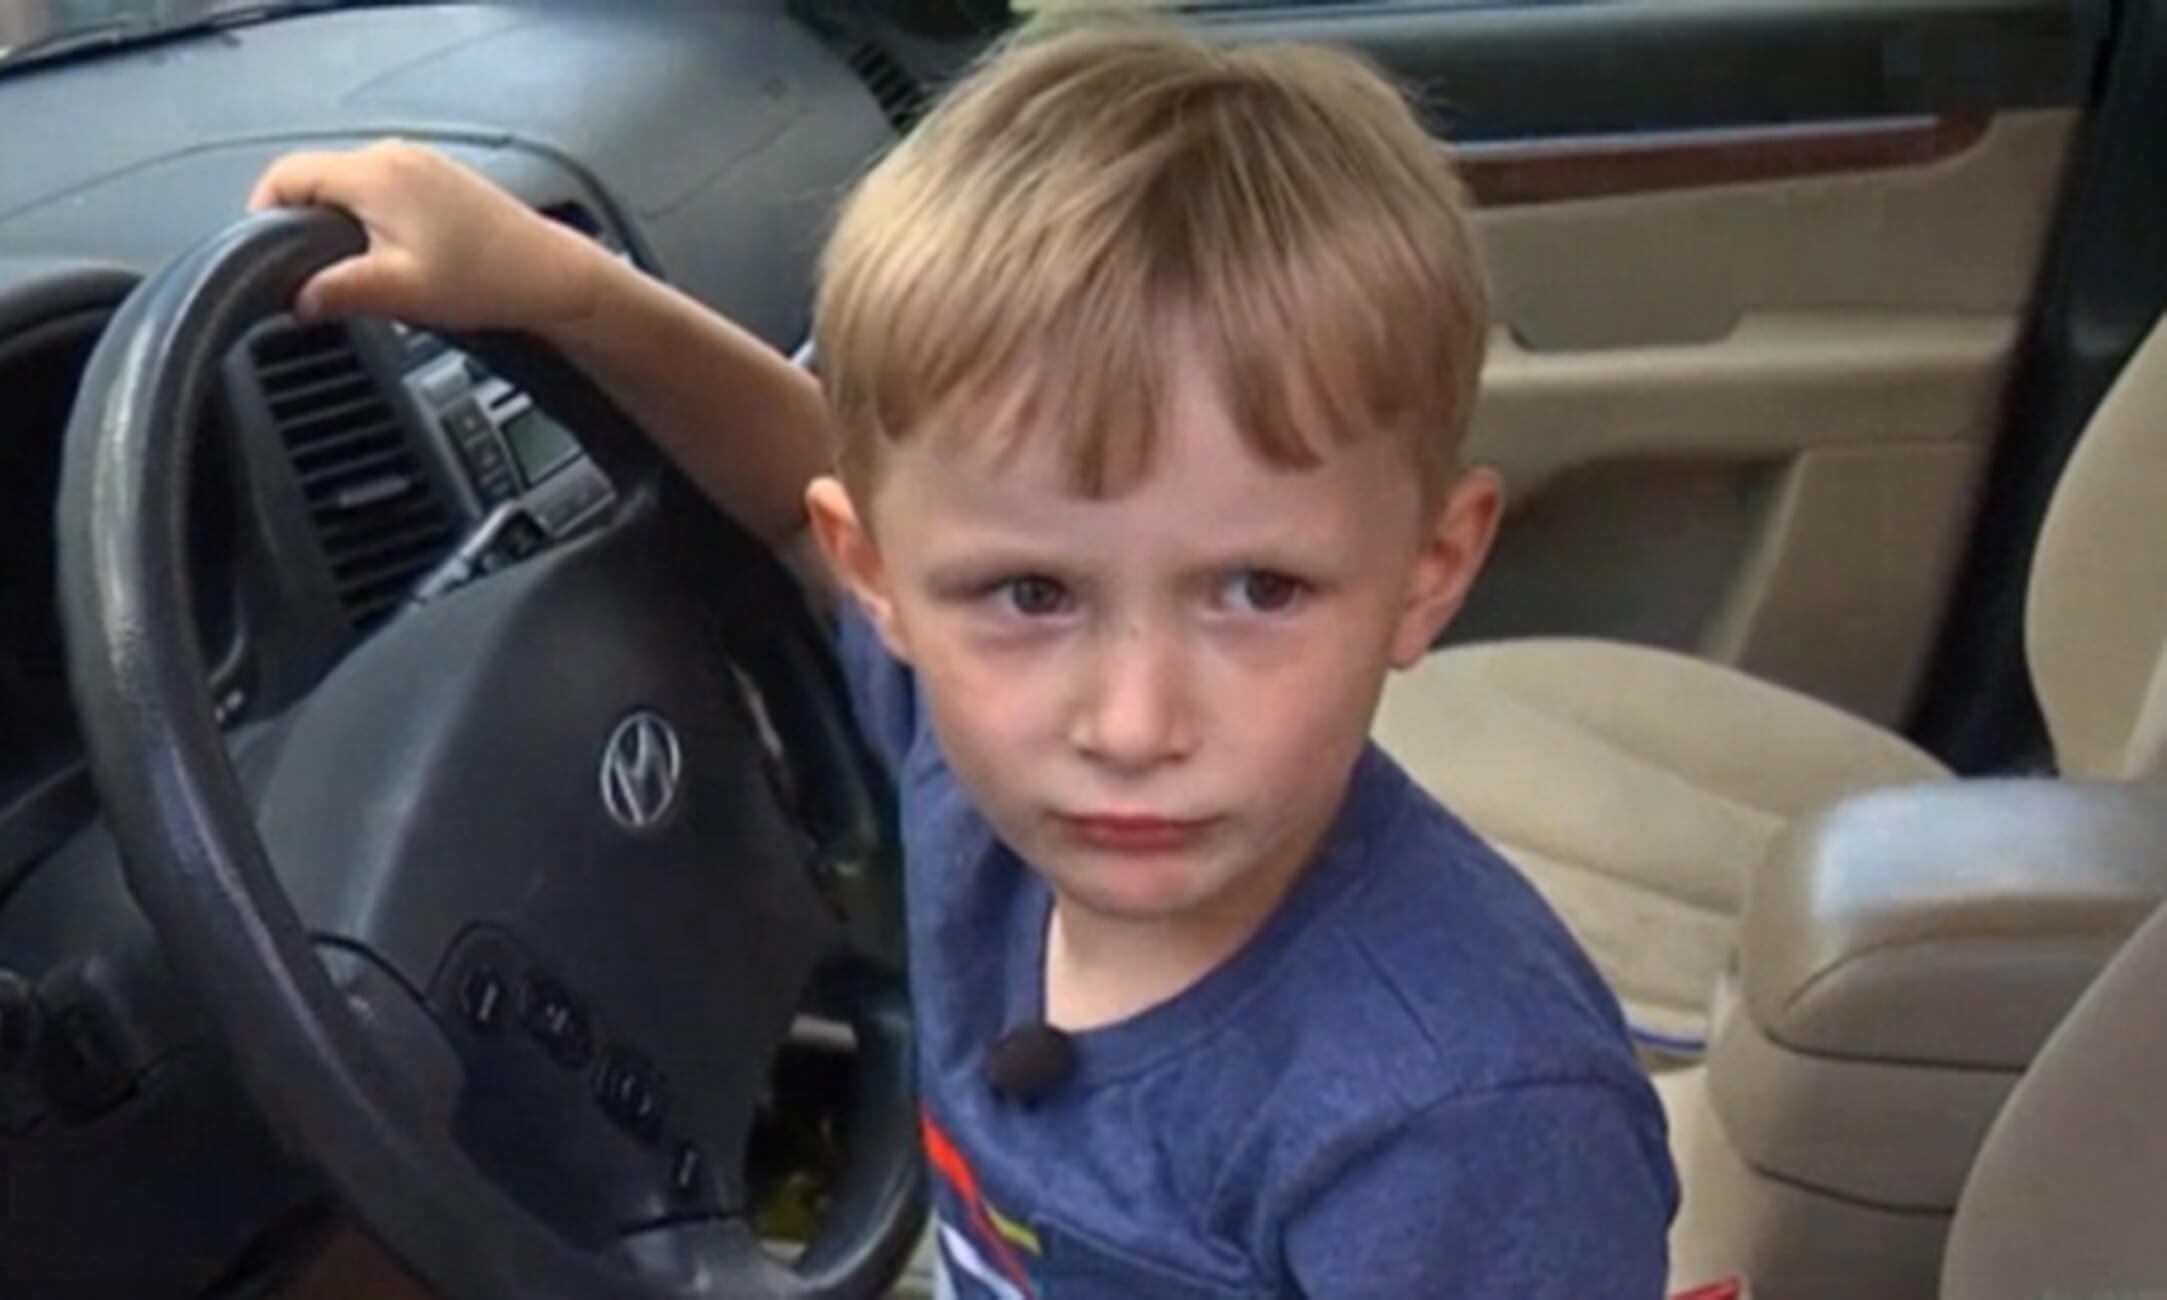 Αυτός είναι ο τετράχρονος που έκλεψε τα κλειδιά αυτοκινήτου και οδήγησε για να πάρει σοκολάτες – video